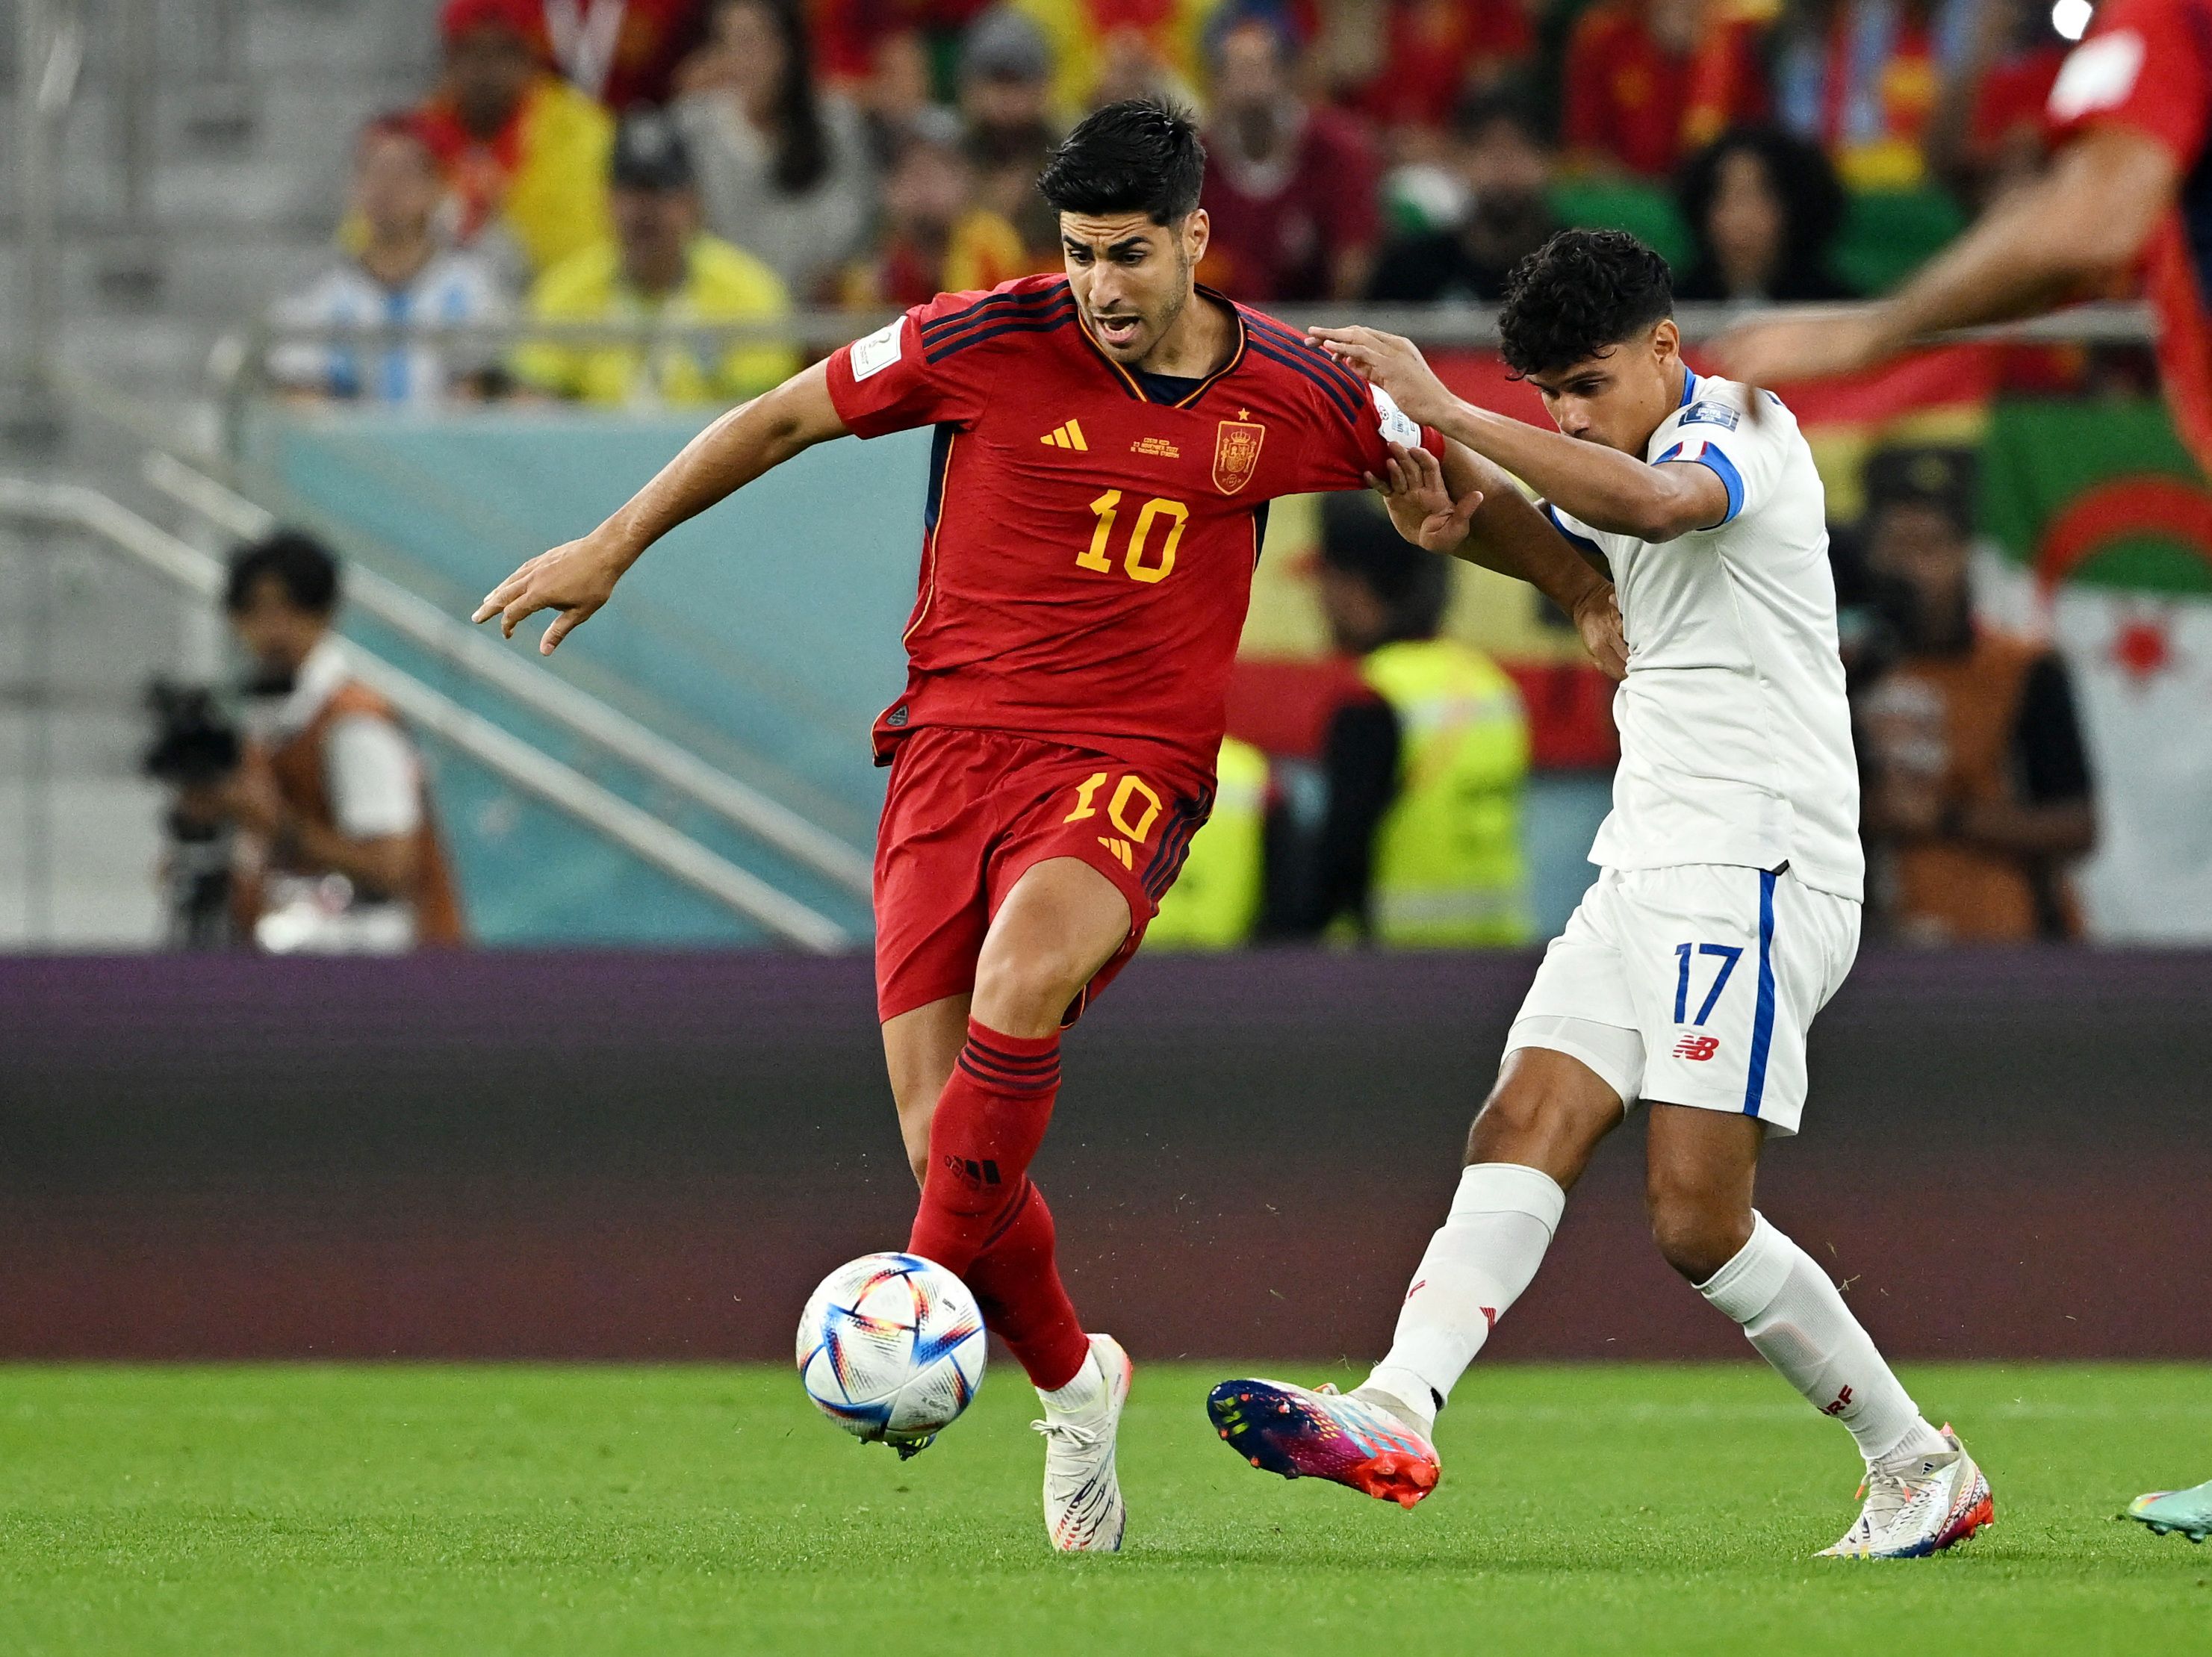 Primeros minutos entre España y Costa Rica en el Al Thumama. La selección europea domina el control de la pelota. REUTERS/Dylan Martinez